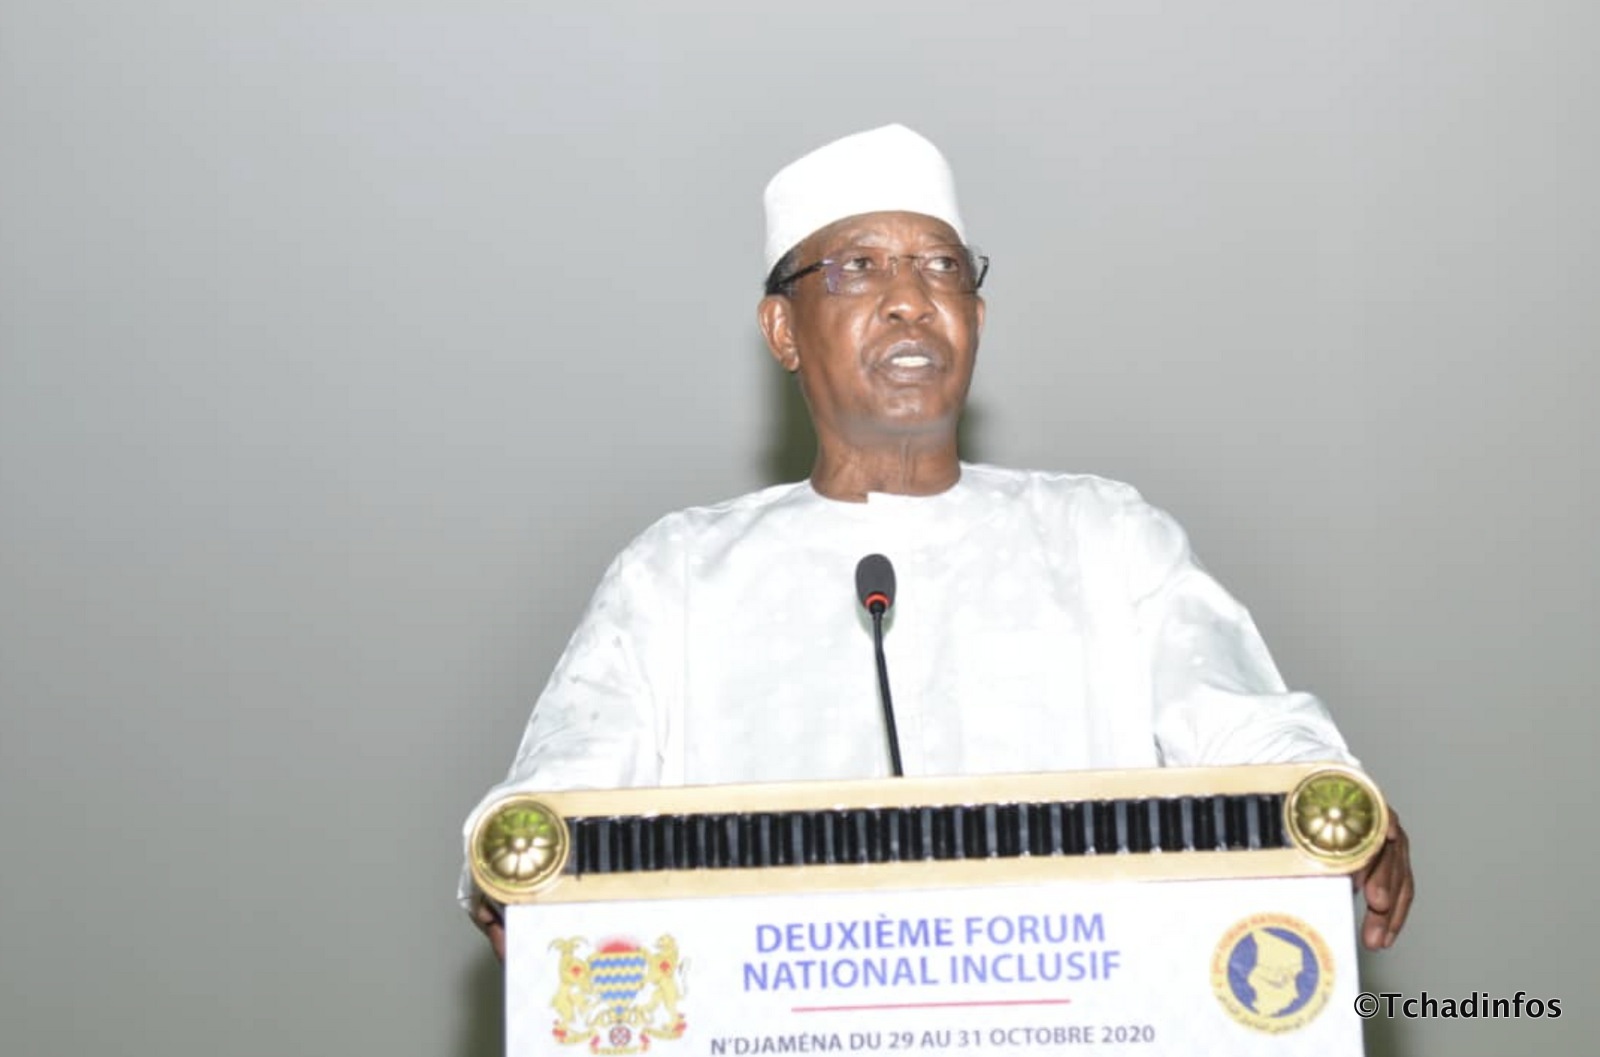 2e Forum national inclusif : Idriss Déby Itno rappelle le caractère inclusif des assises